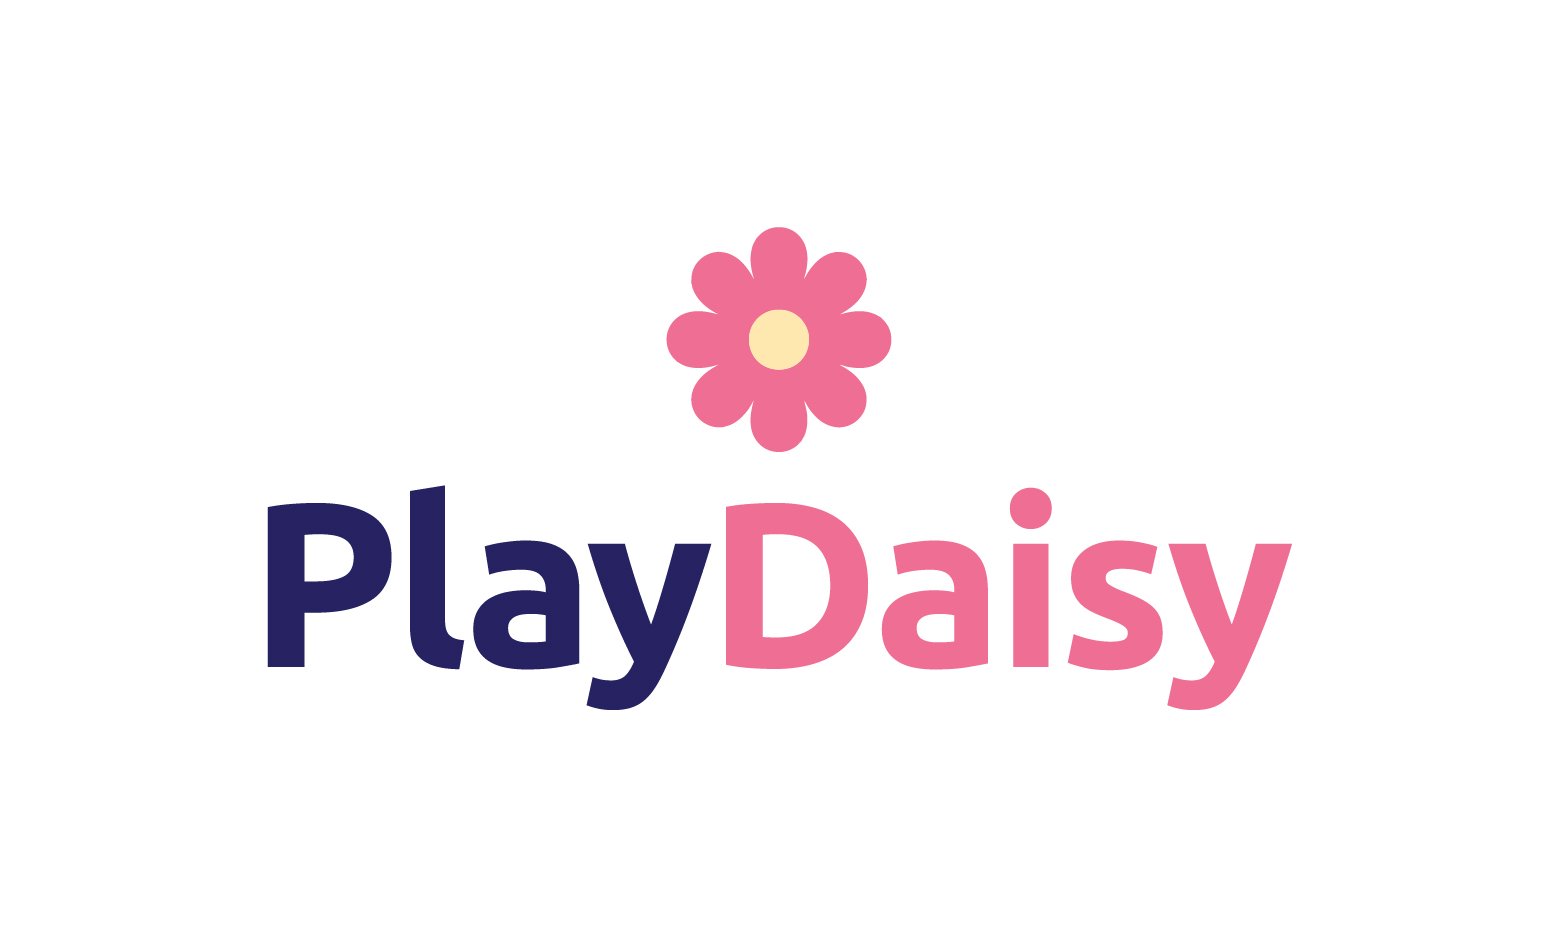 PlayDaisy.com - Creative brandable domain for sale